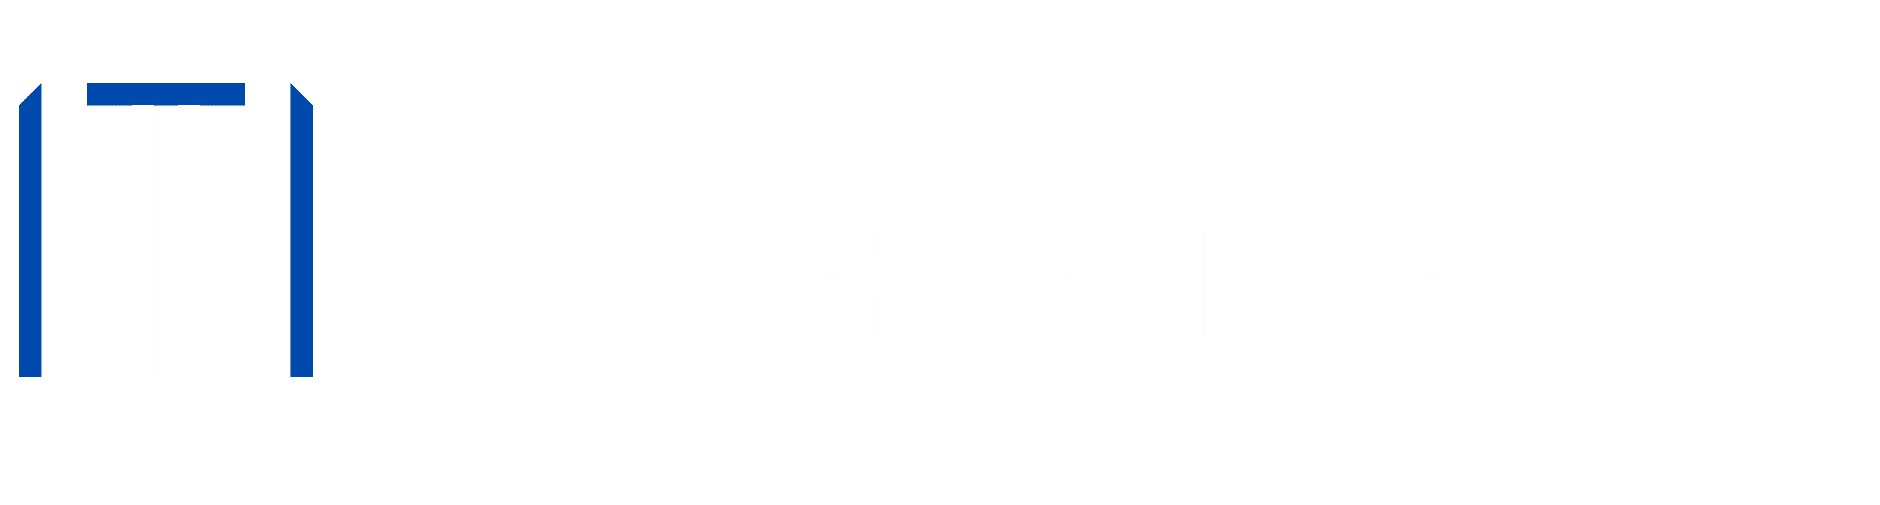 TheAshishMishra